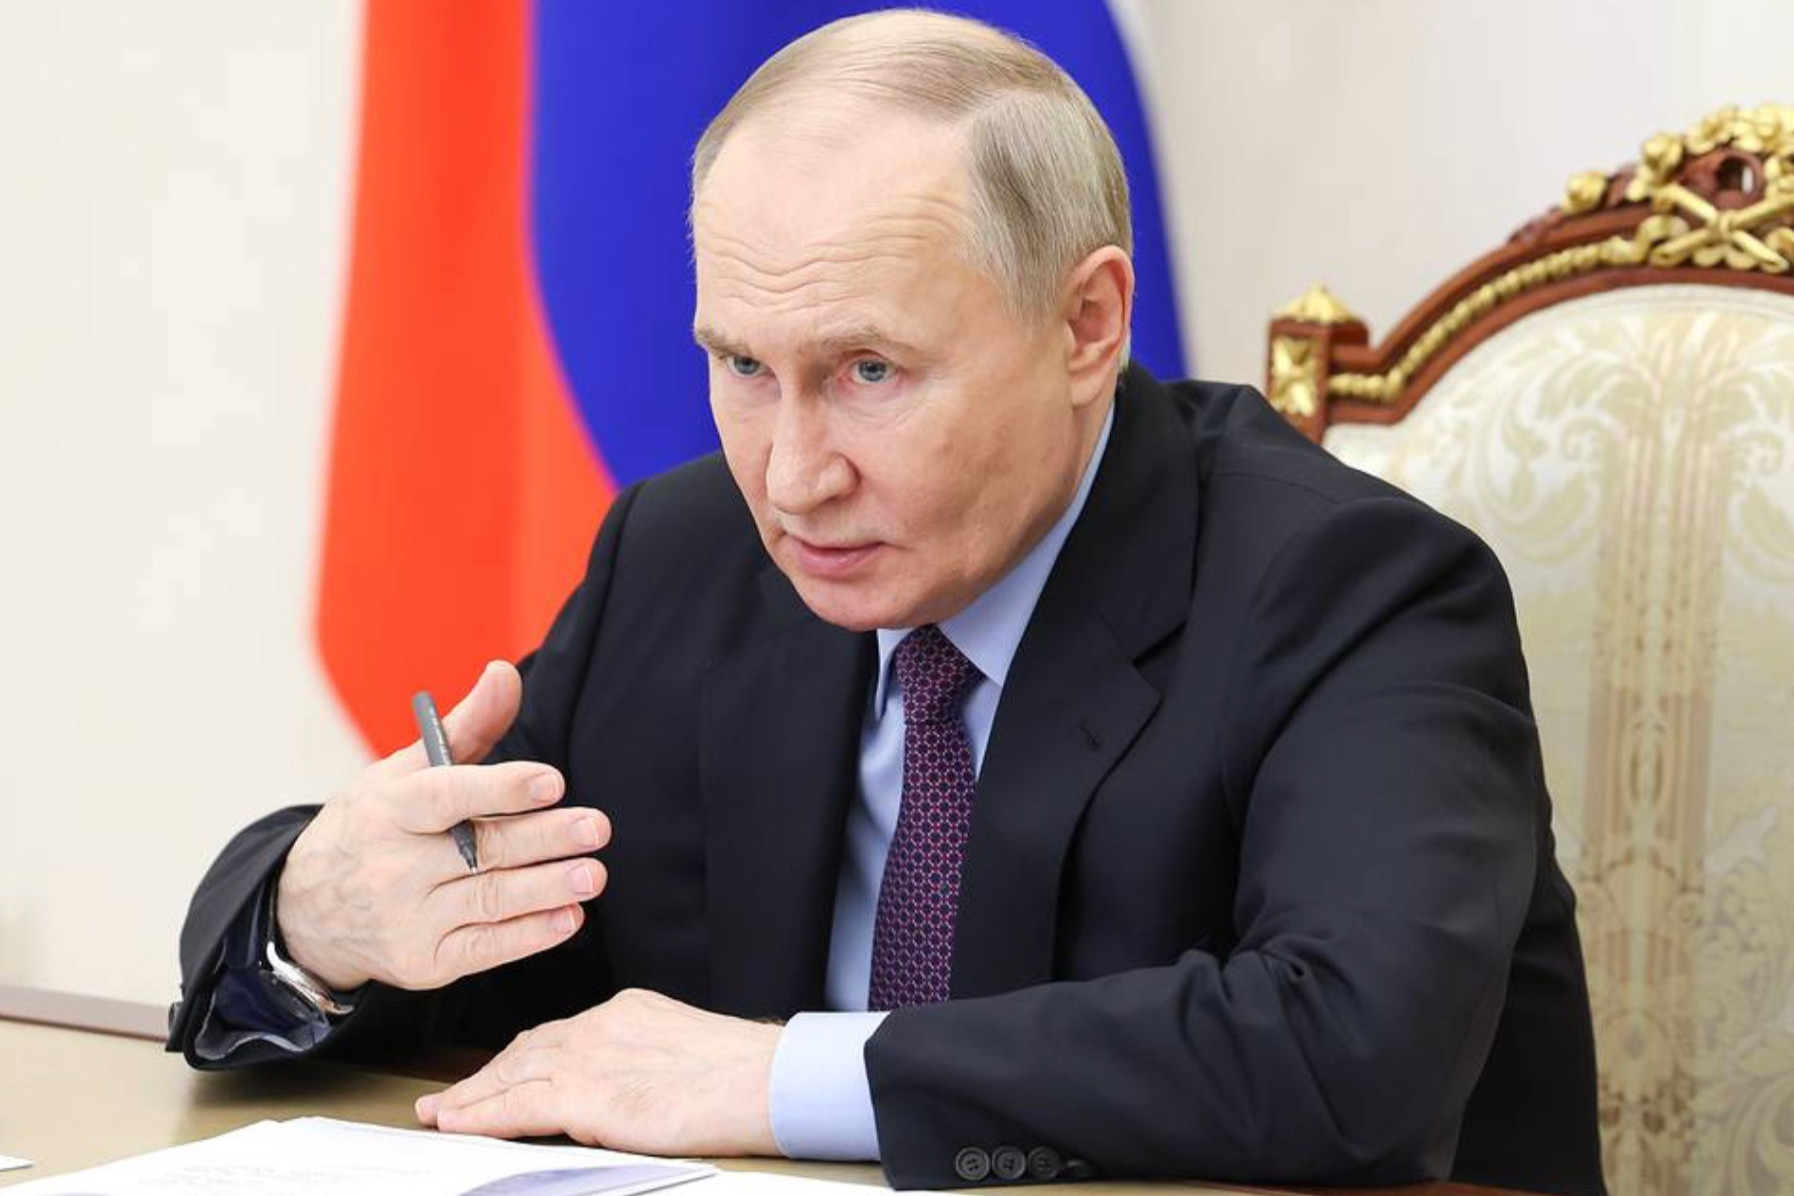 Tổng thống Putin ký sắc lệnh tịch thu tài sản của Mỹ ở Nga